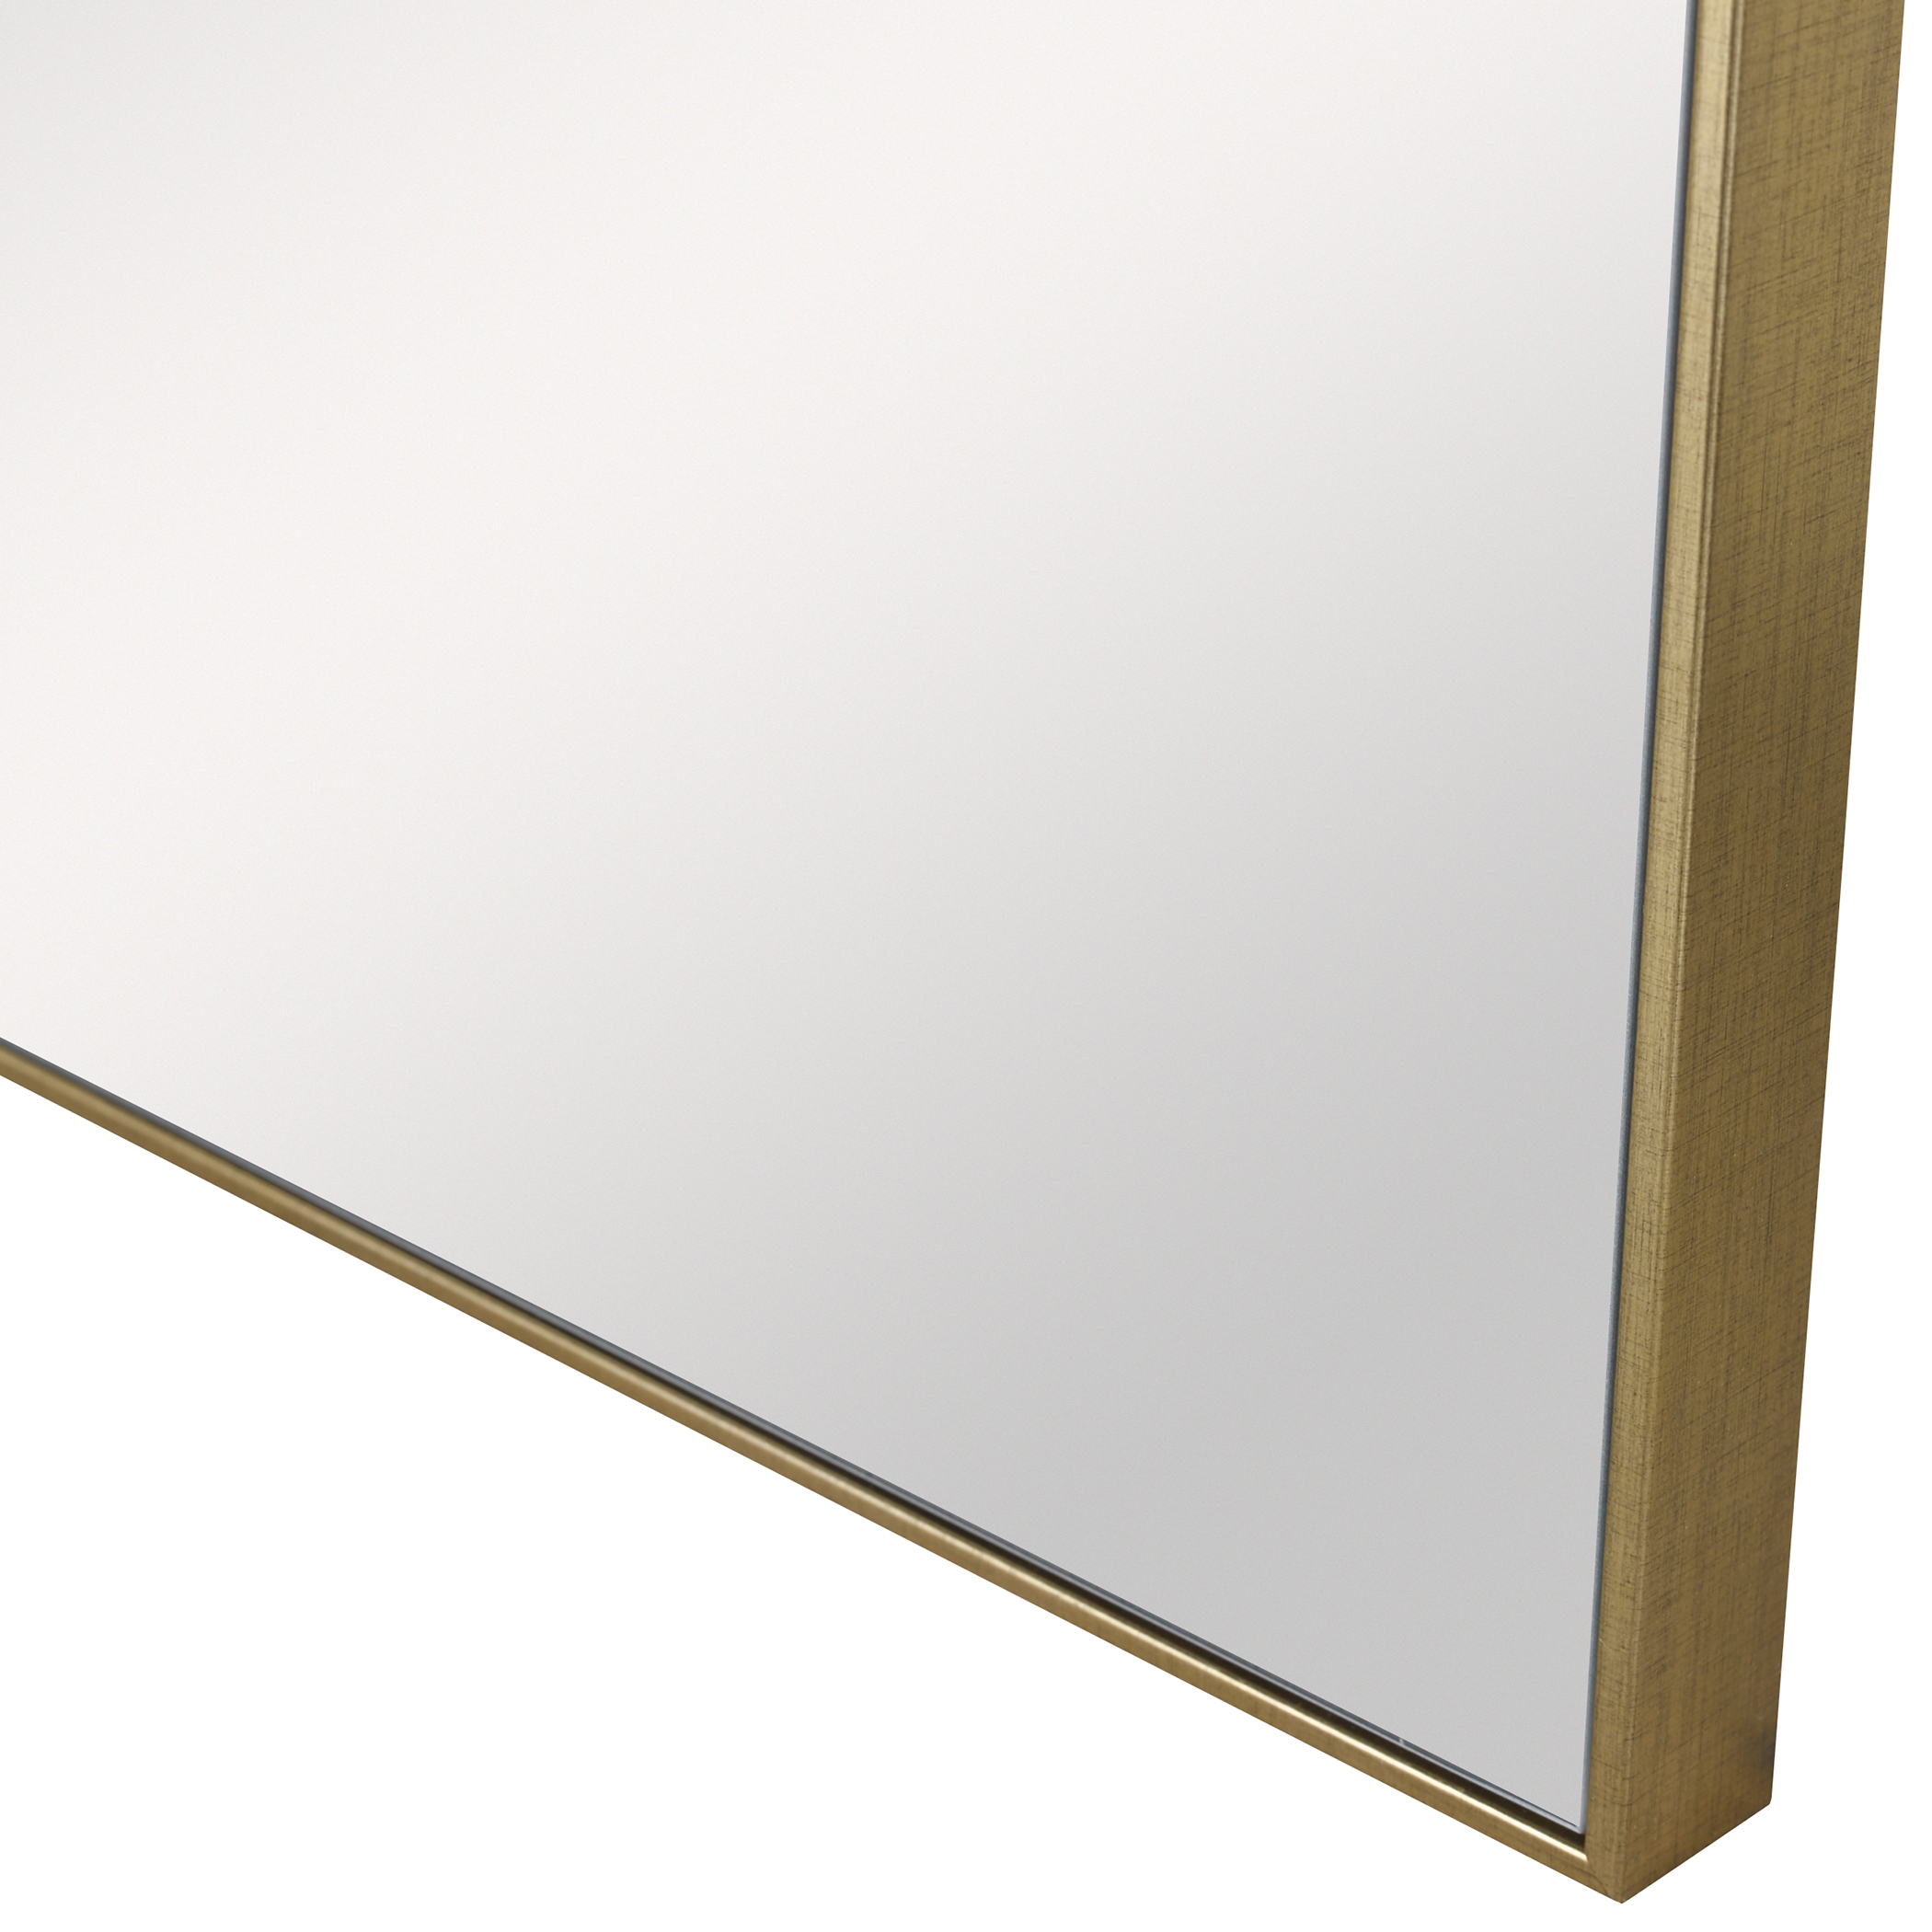 Alexo Gold Square Mirror - Image 2